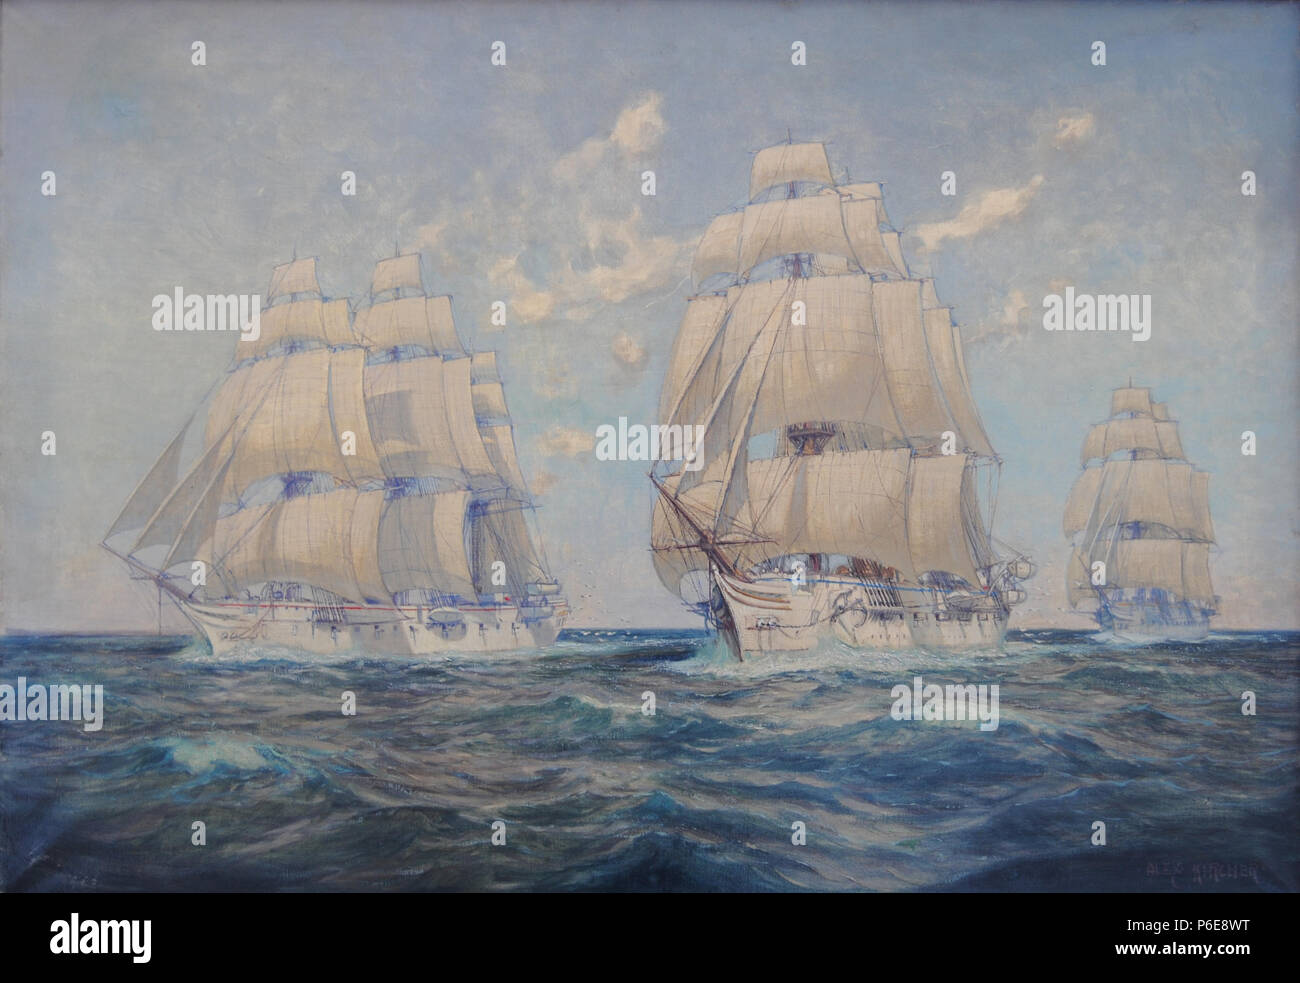 77 Die drei Marinetraining Schiffe, Stosch, Stein und Gneisenau unter vollen Segeln Stockfoto